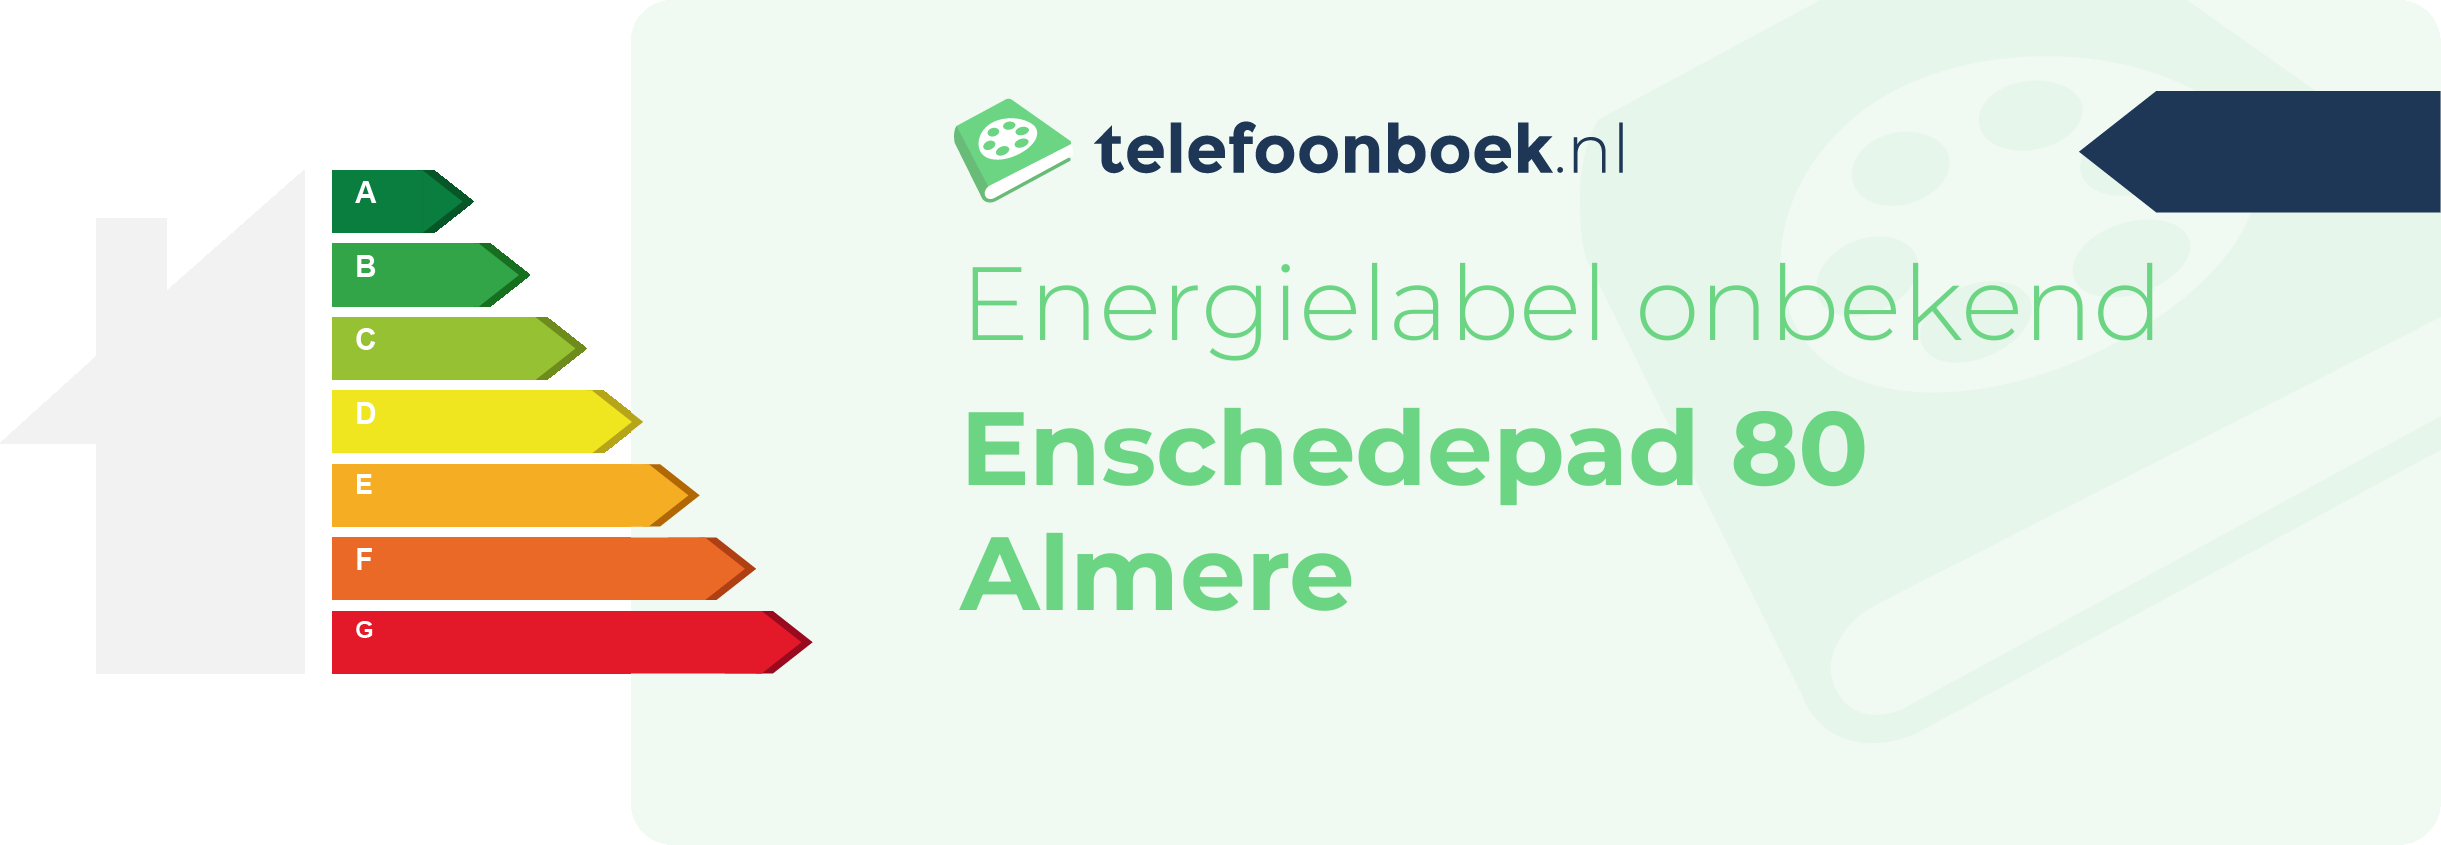 Energielabel Enschedepad 80 Almere